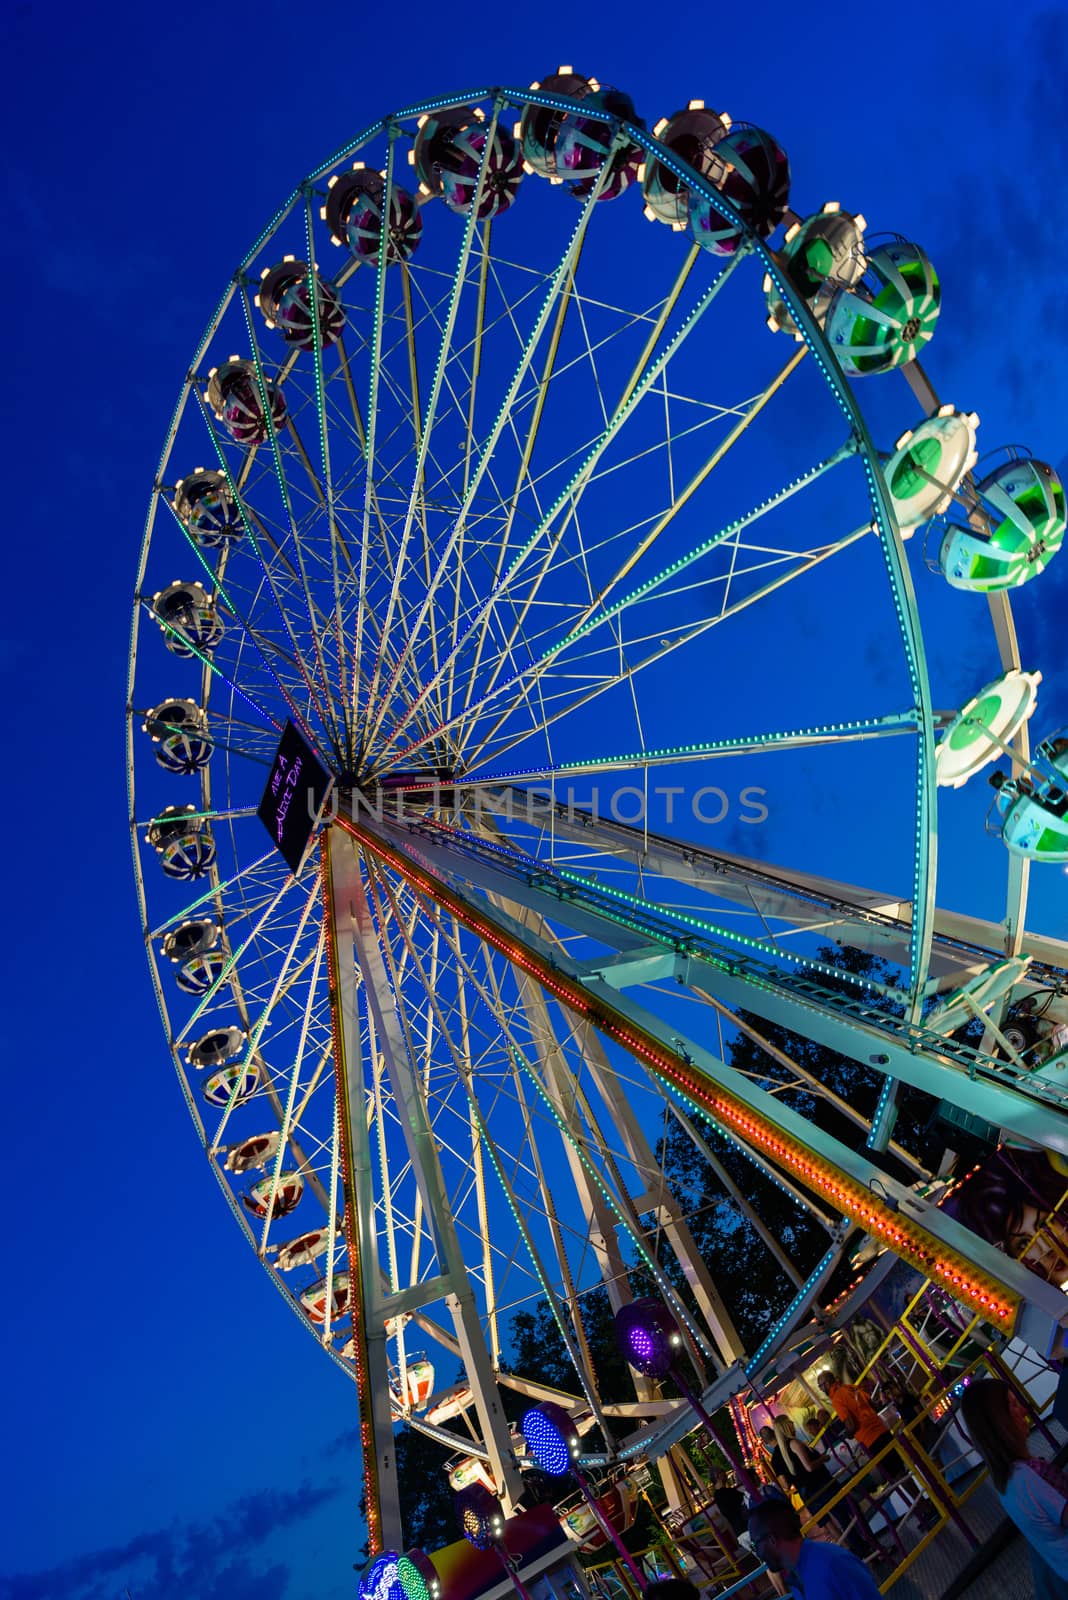 Ferris wheel in amusement park in Lausanne, Switzerland by Eagle2308